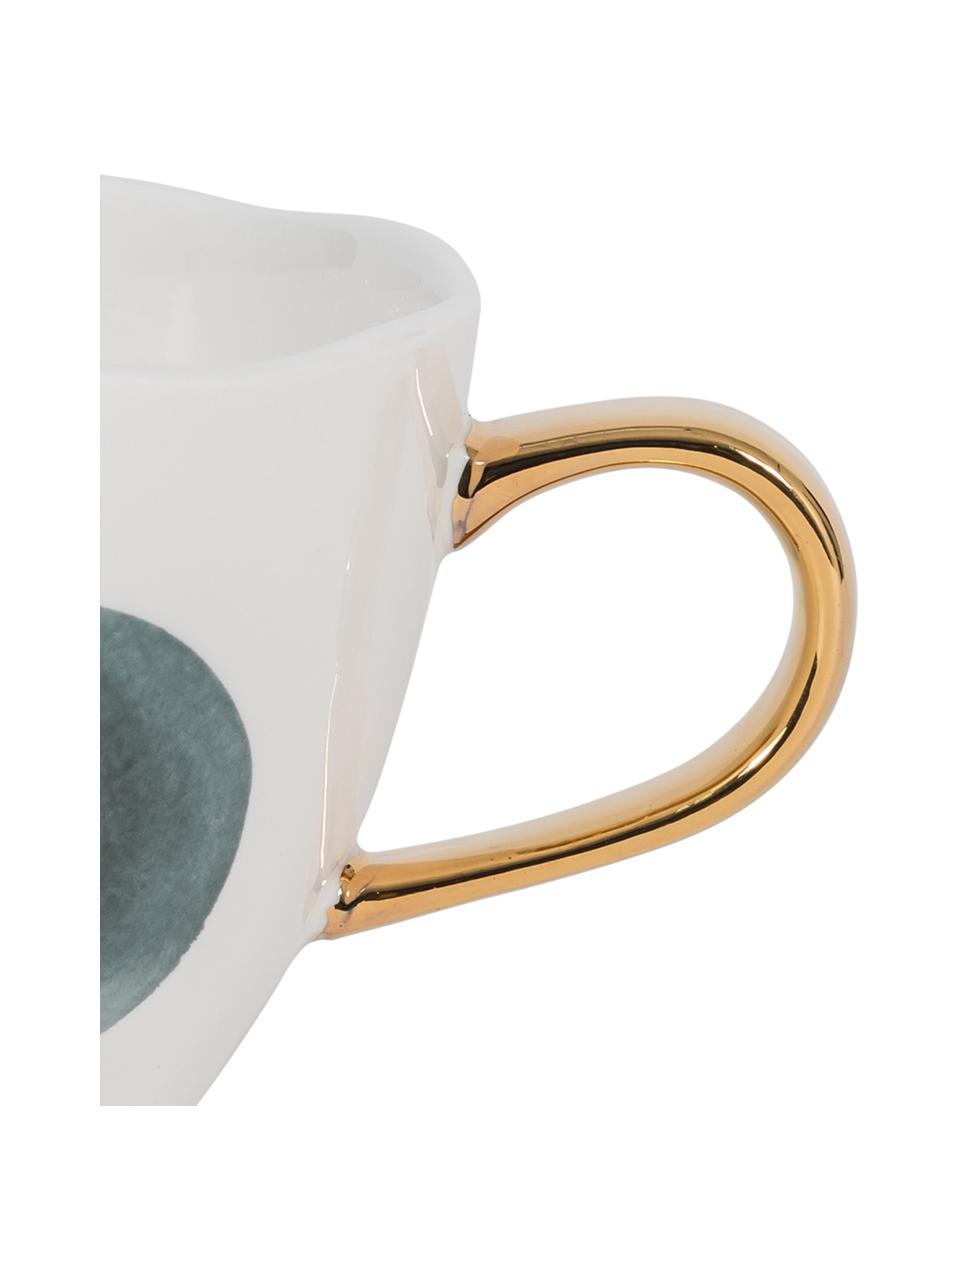 Gestippelde Good Morning-mok met gouden handvat, Keramiek, Wit, grijs, Ø 11 x H 8 cm, 350 ml